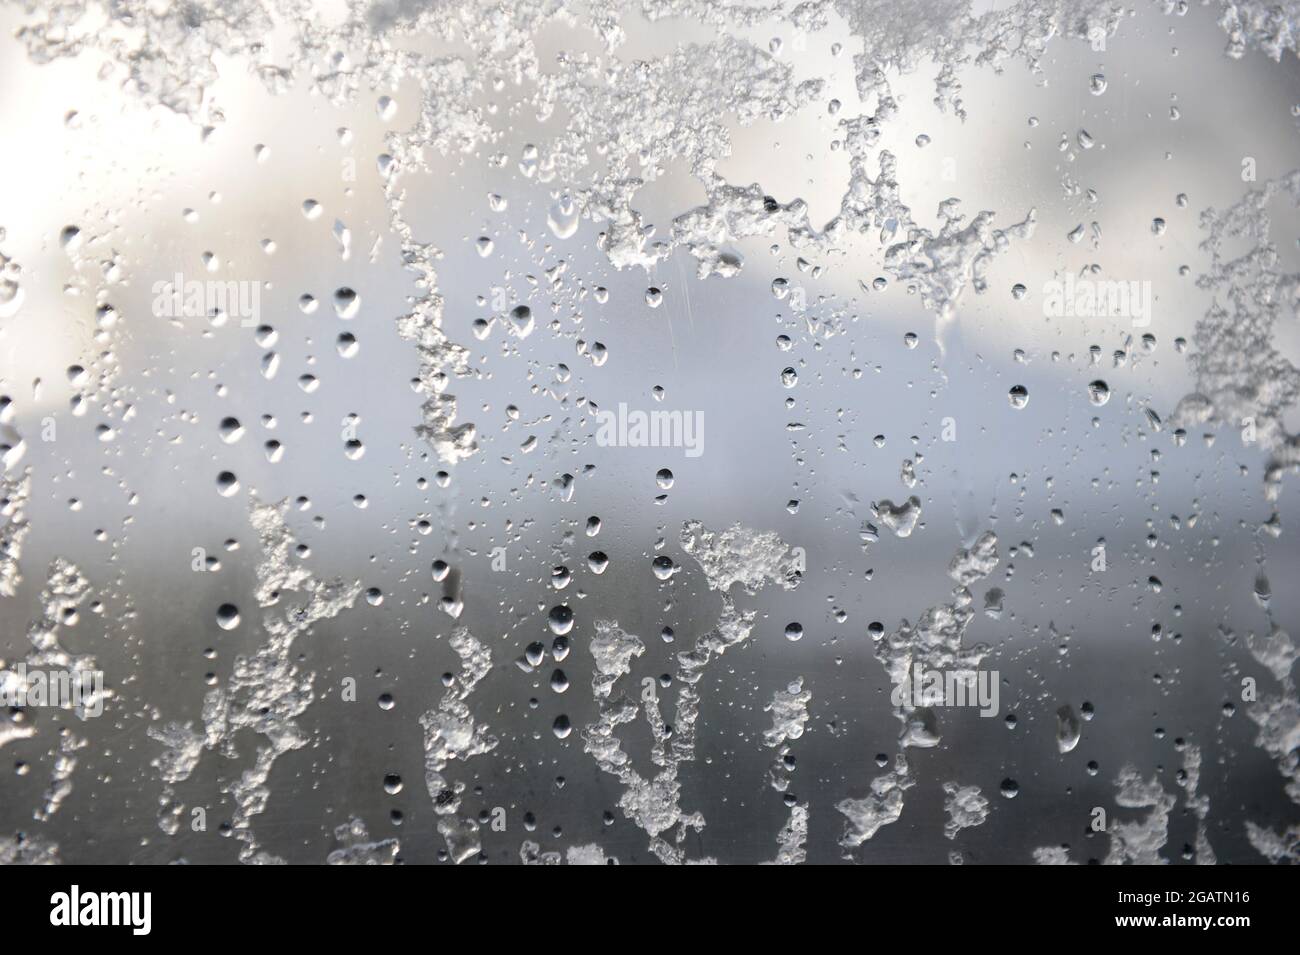 Schnee, Eis und Regentropfen, die im Winter teilweise auf einer Fensterscheibe auftauen – Hintergrundbild für die Winterfunktion Stockfoto